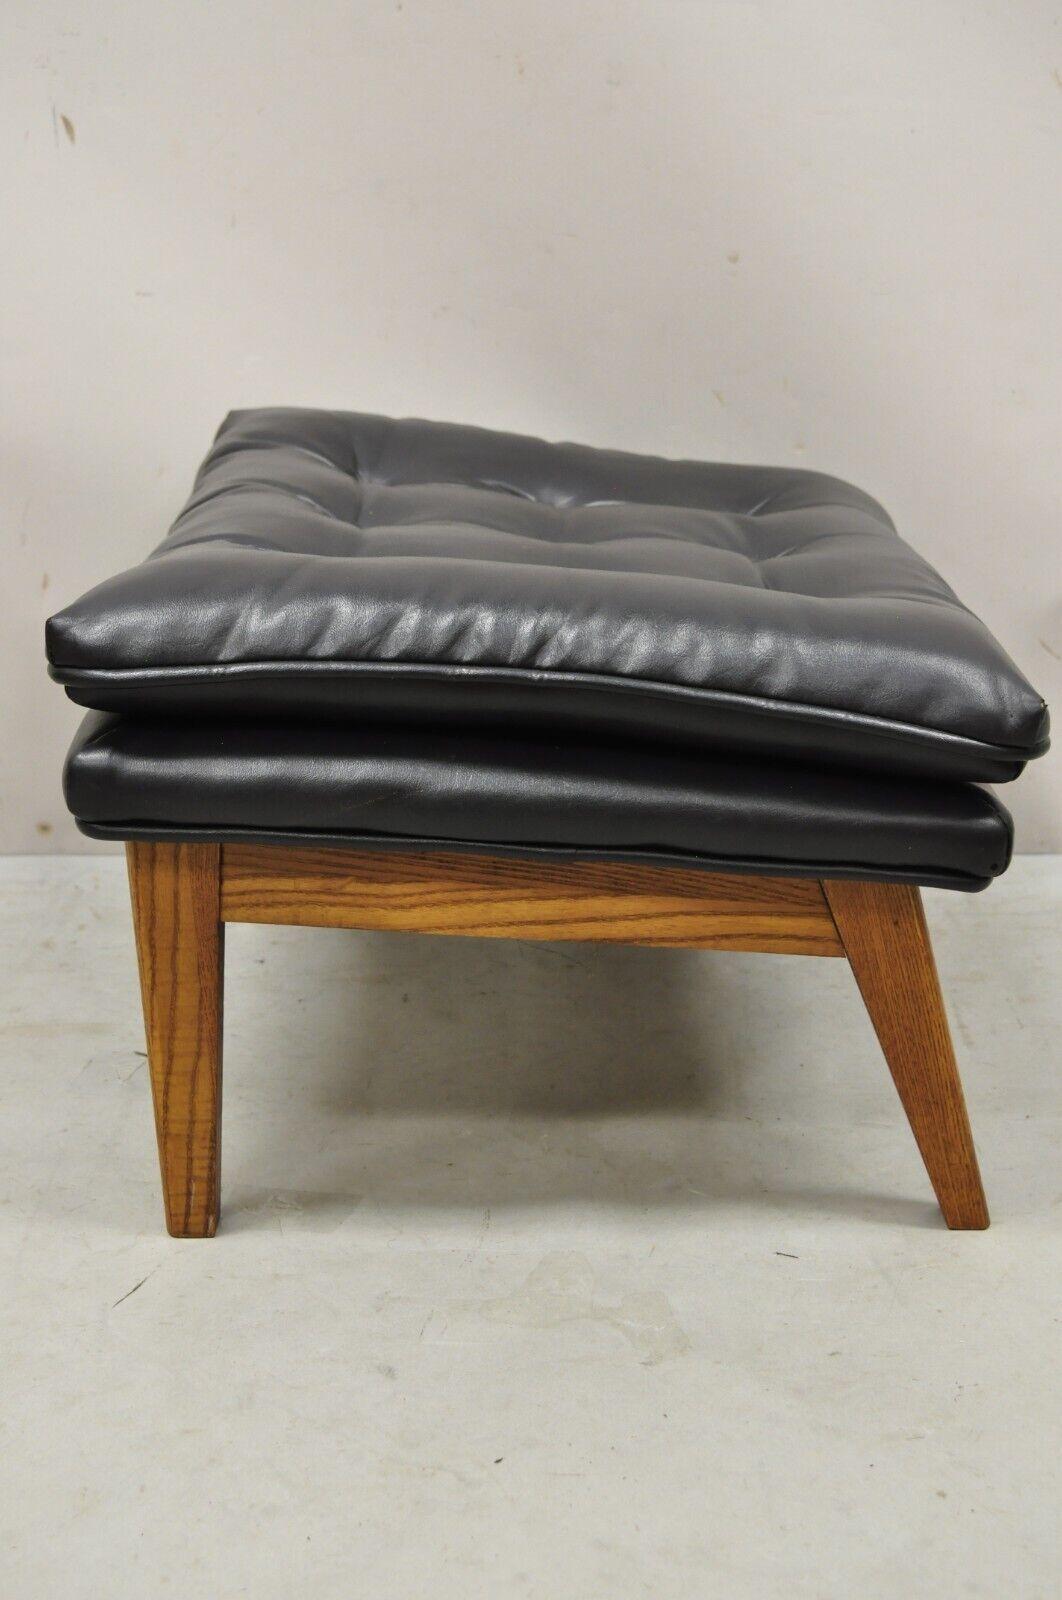 Wood Vintage Mid-Century Modern Black Tufted Vinyl Lounge Chair Footstool Ottoman